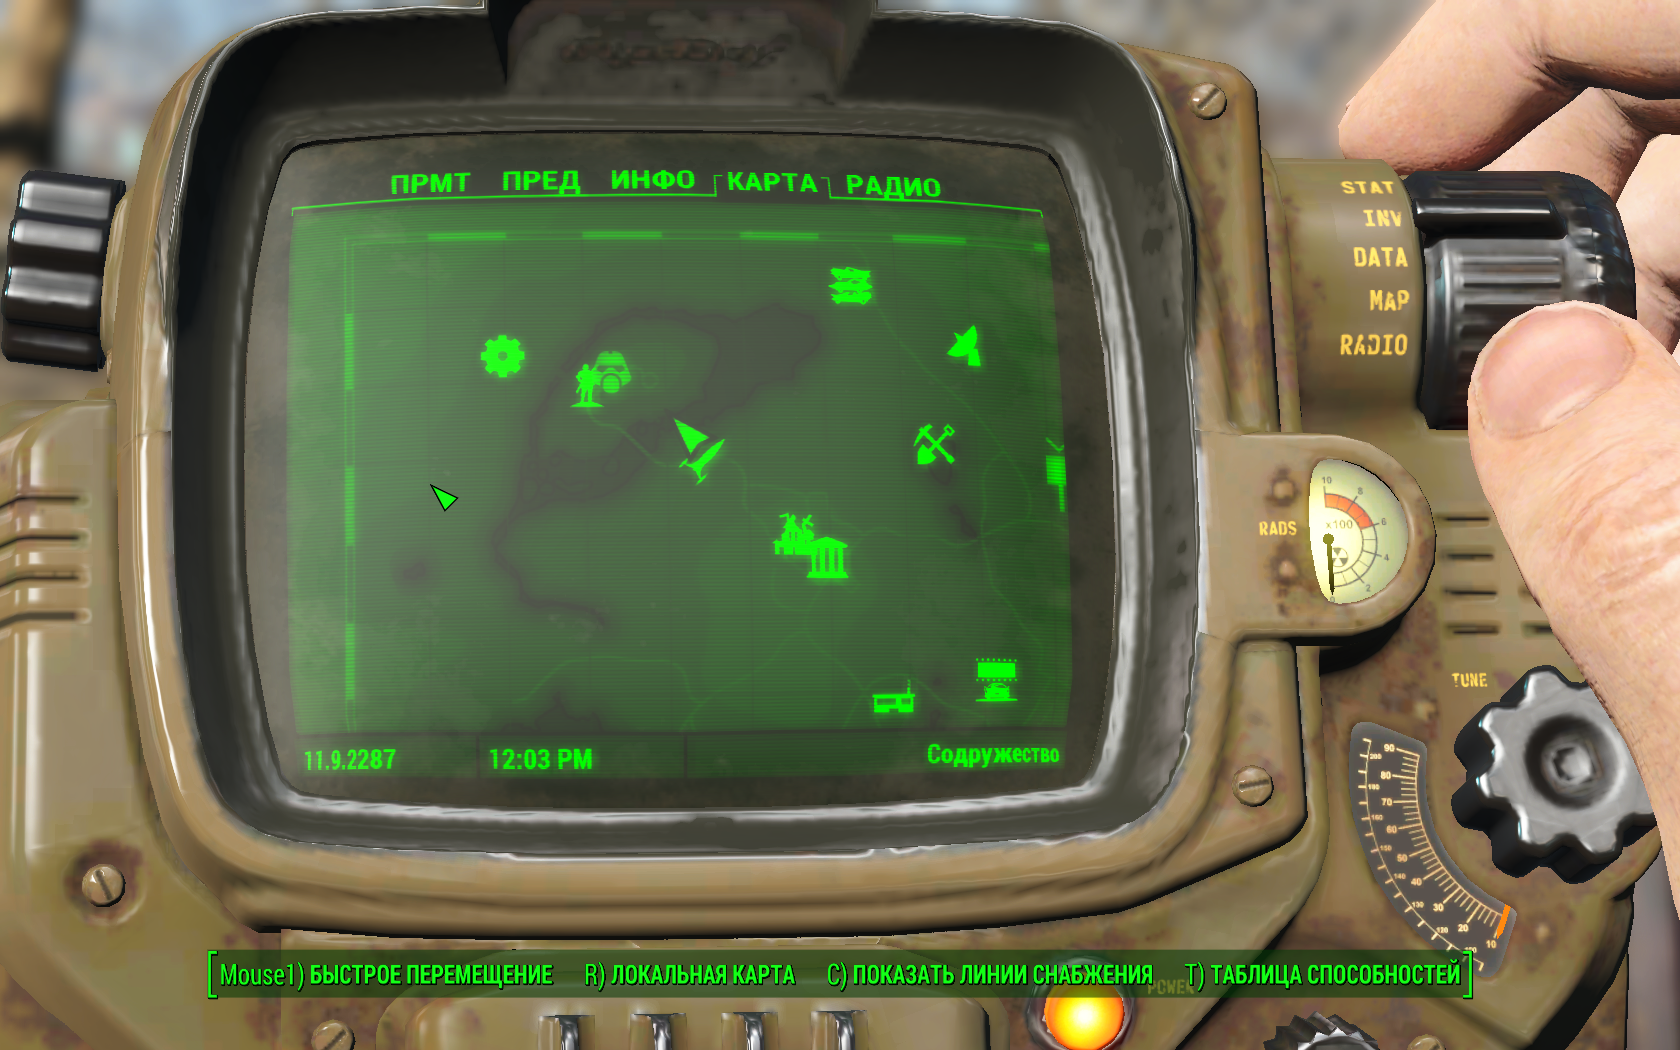 Полный обзор игры Fallout 4 от iGamesWorld: Управление поселением (-ями) в Fallout 4